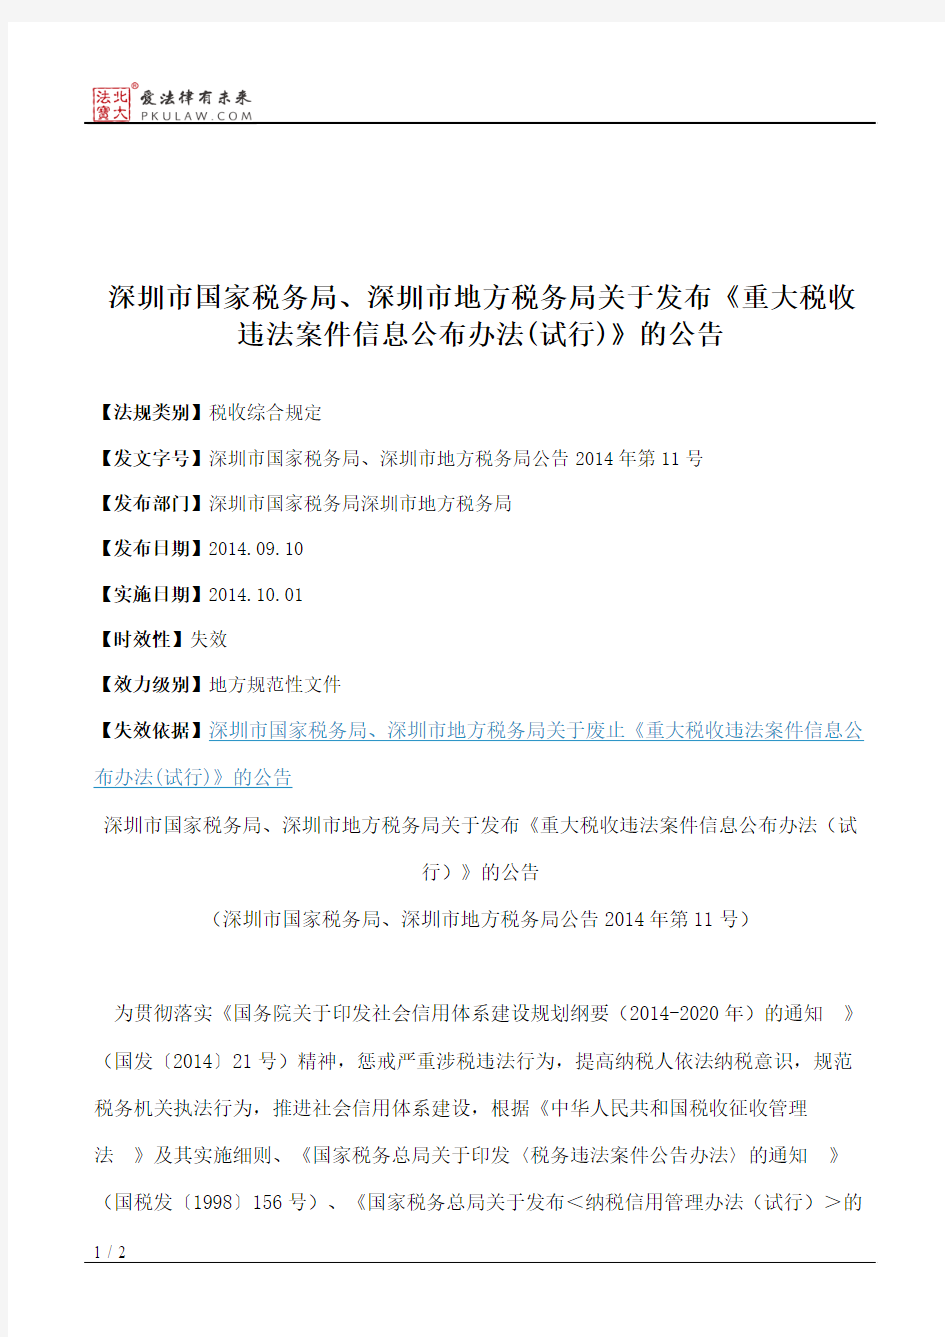 深圳市国家税务局、深圳市地方税务局关于发布《重大税收违法案件